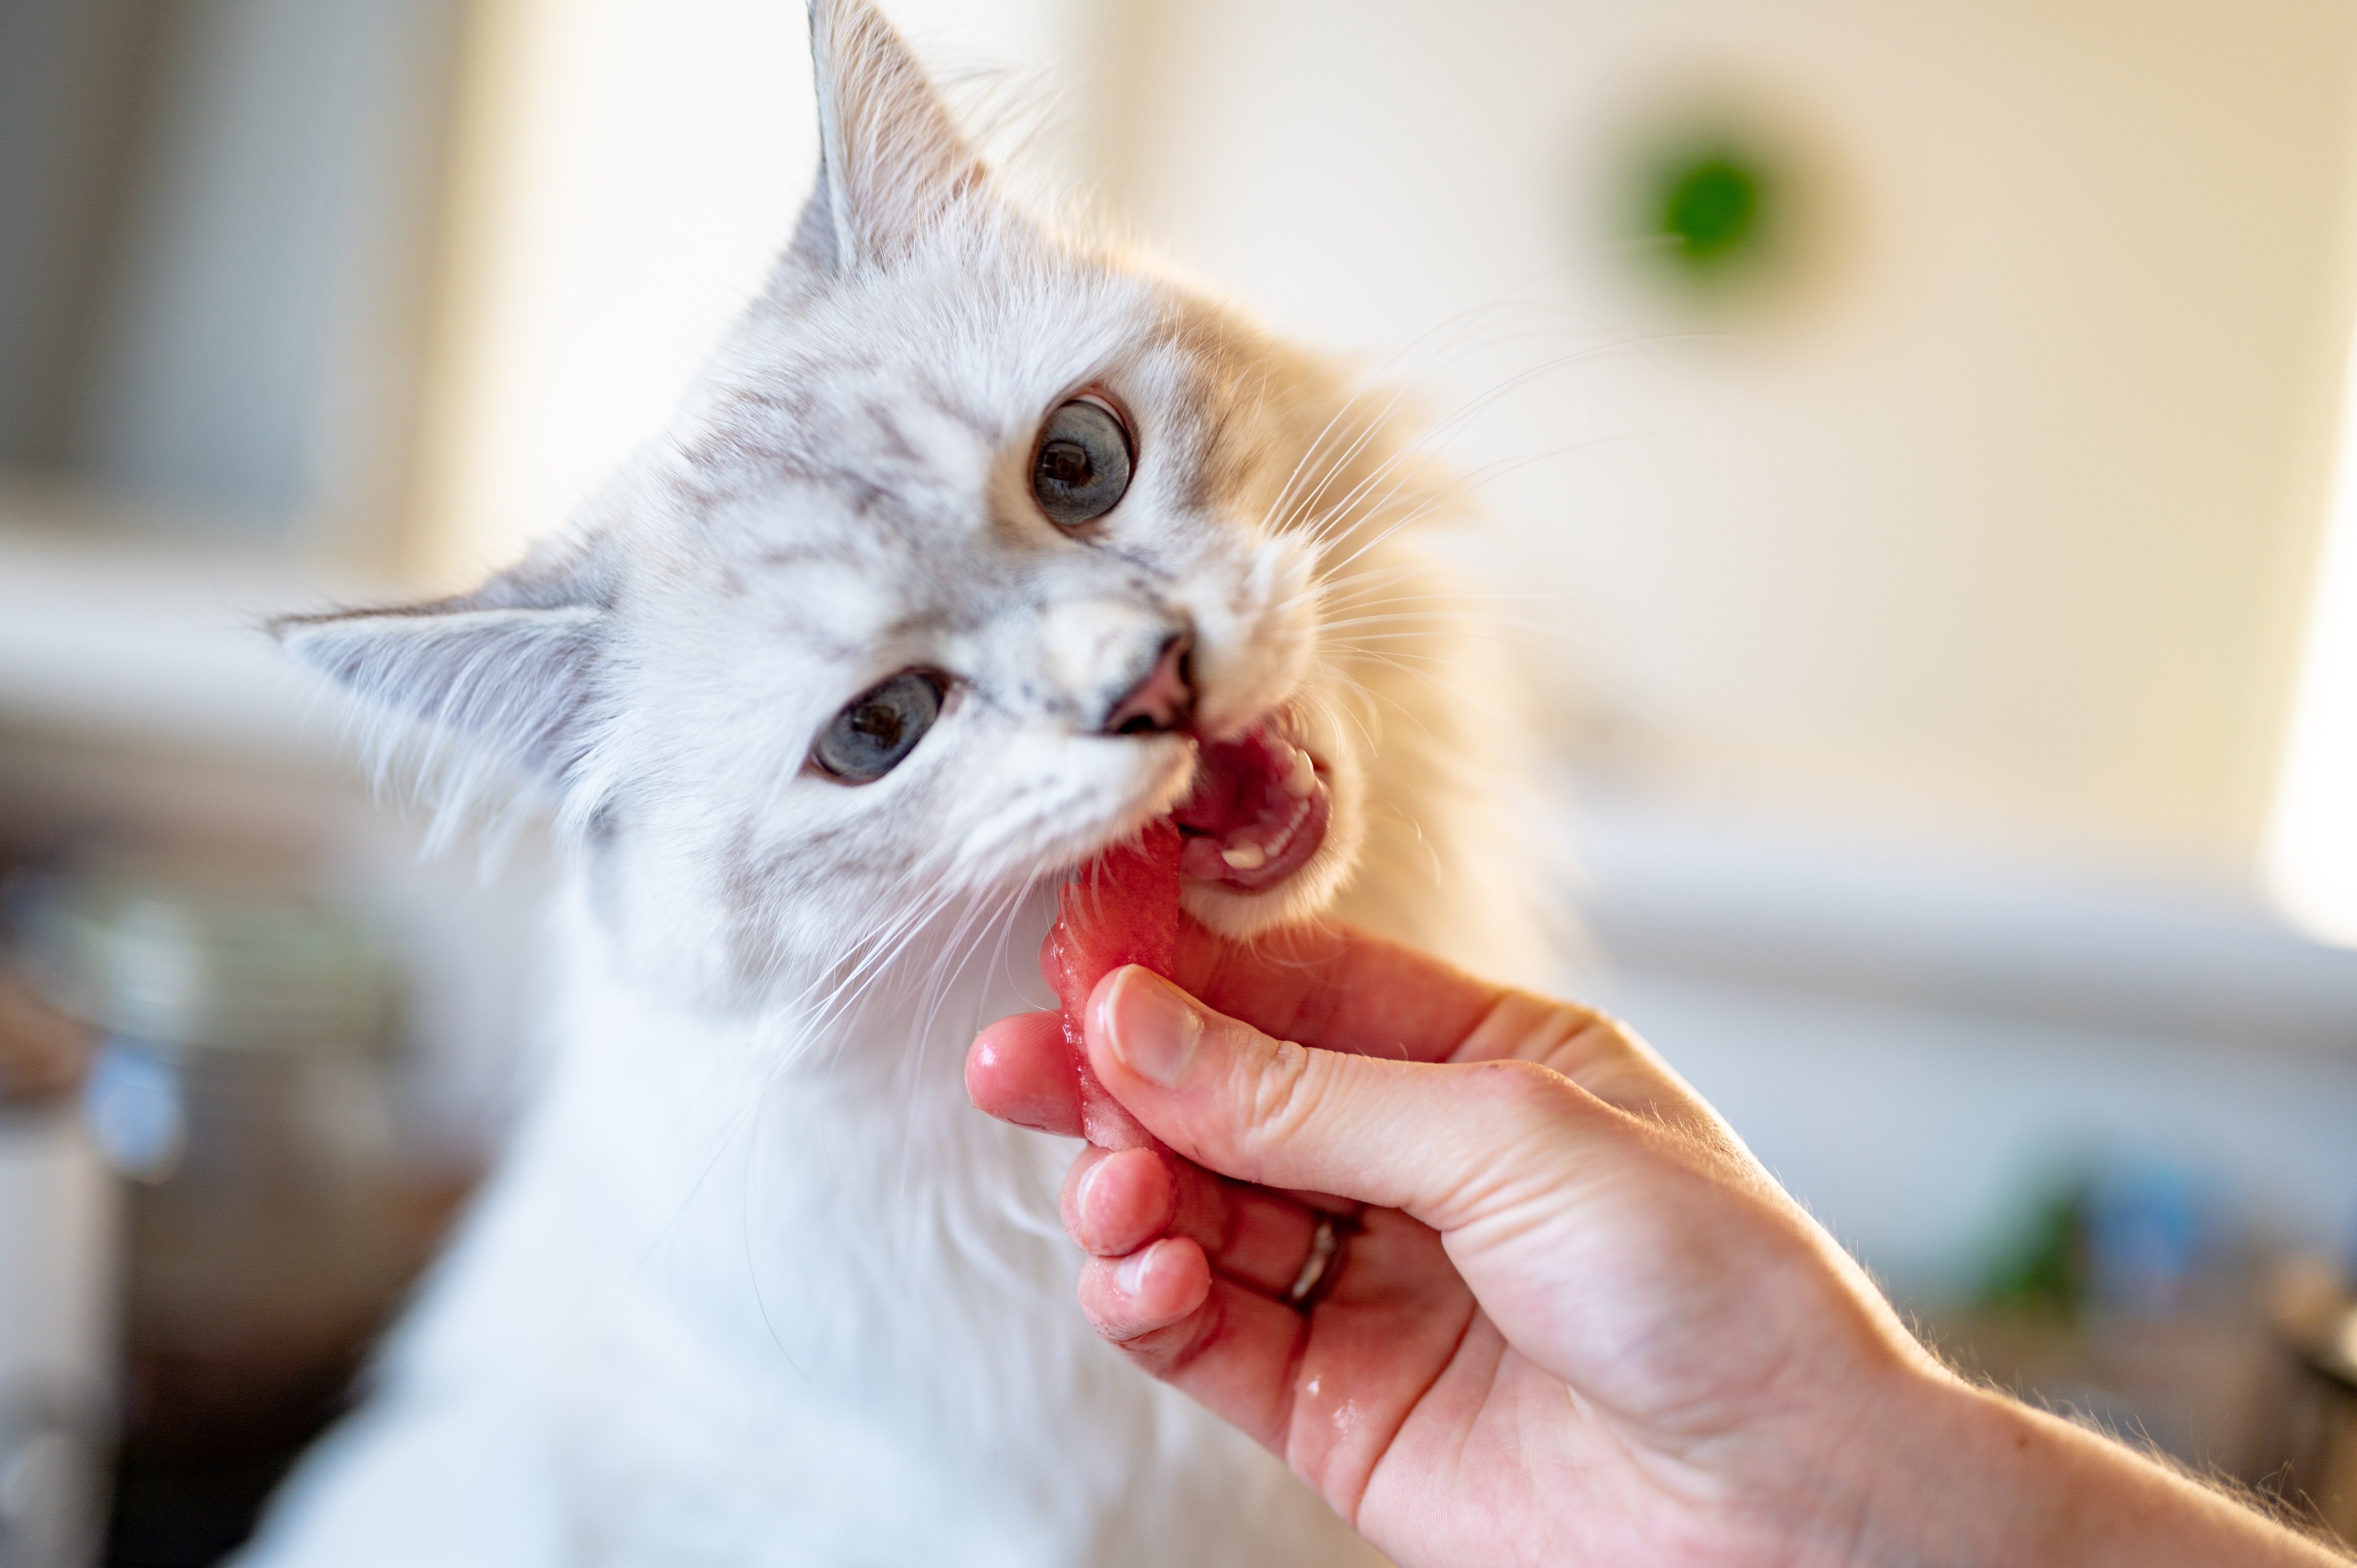 Em gatos, a deficiência de taurina, aminoácido encontrado em alimentos como peixe e frango, pode levar à cegueira (Foto: Pexels/ Piotr Musioł/ CreativeCommons)